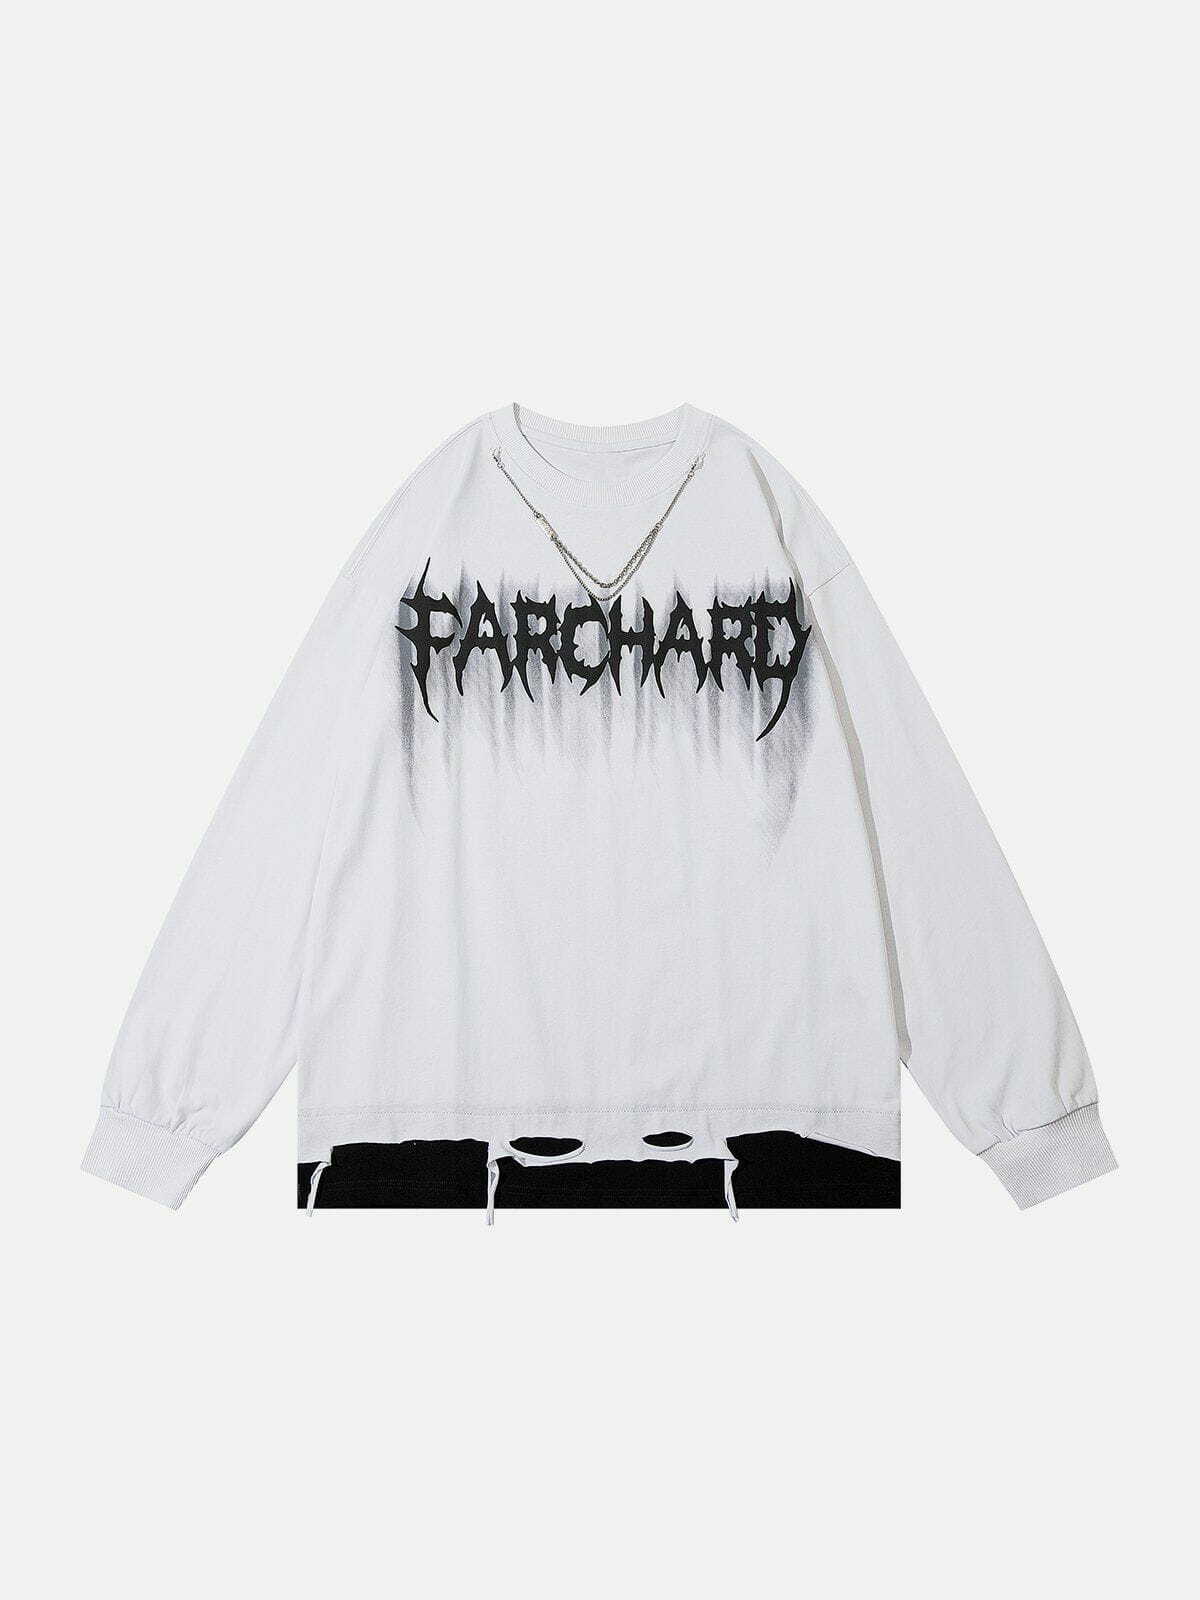 patchwork chain sweatshirt urban chic statement piece 7453